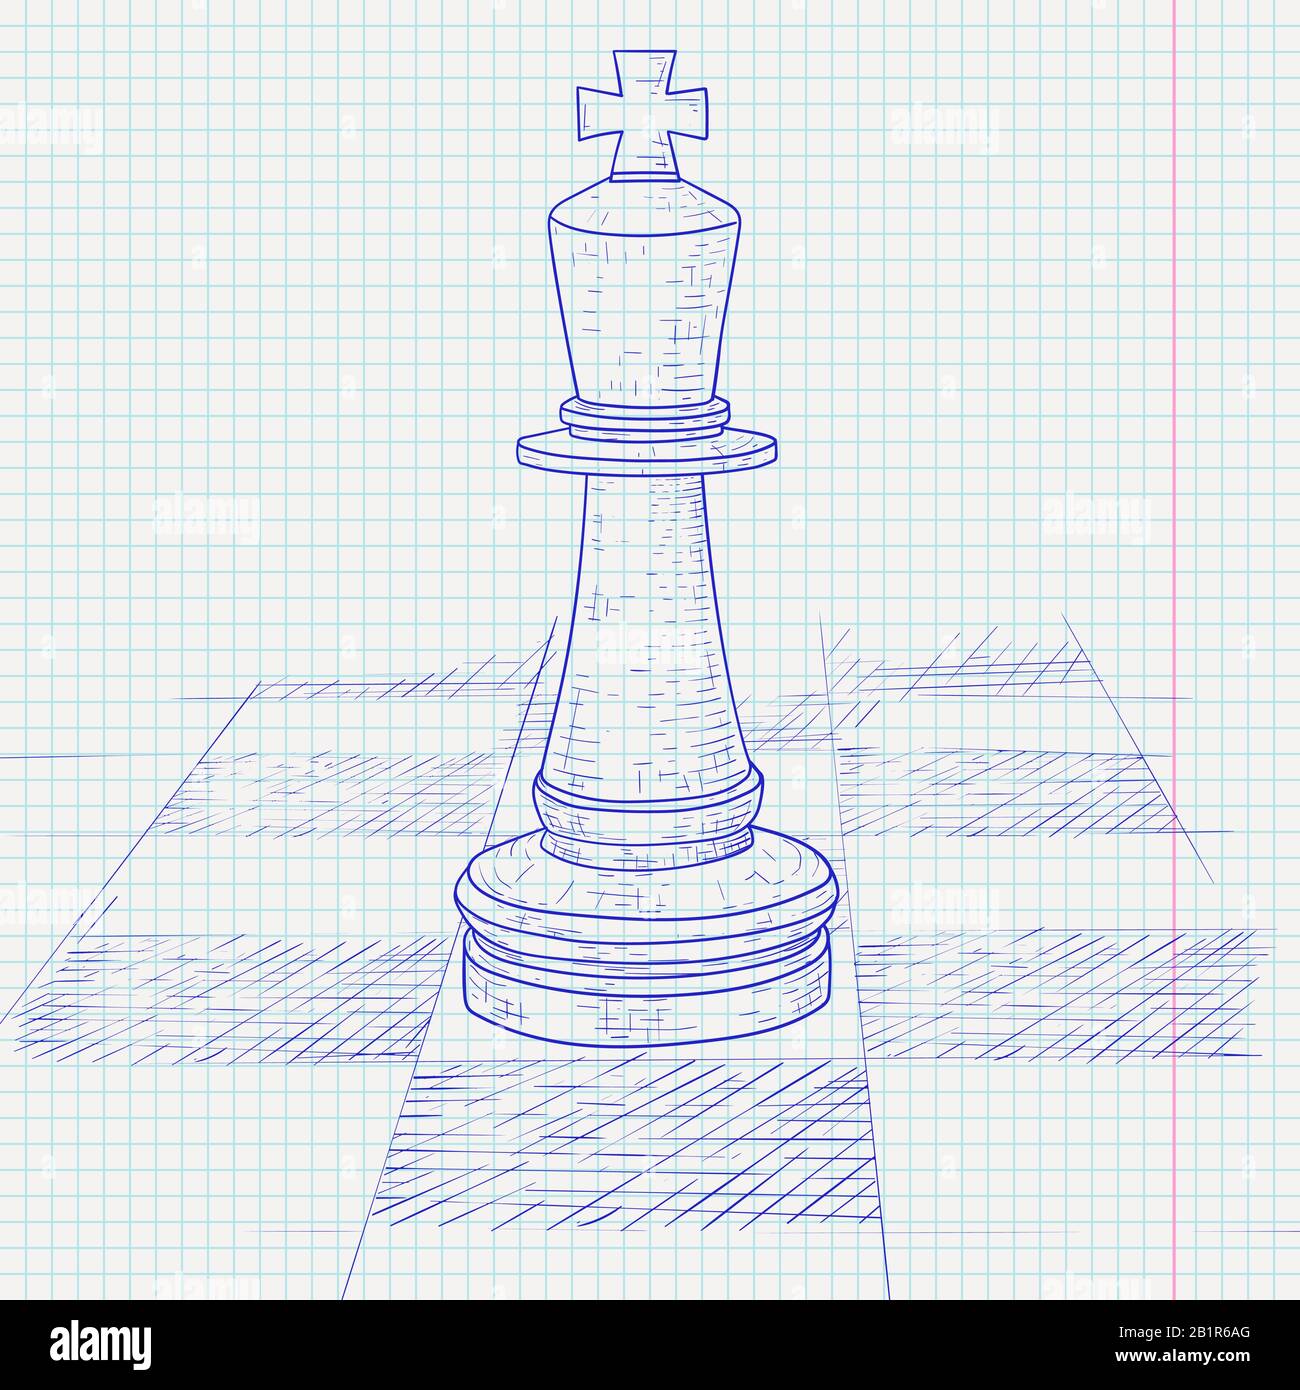 Le roi pièce d'échecs sur un échiquier. Esquisse dessinée à la main sur fond de papier doublé Illustration de Vecteur